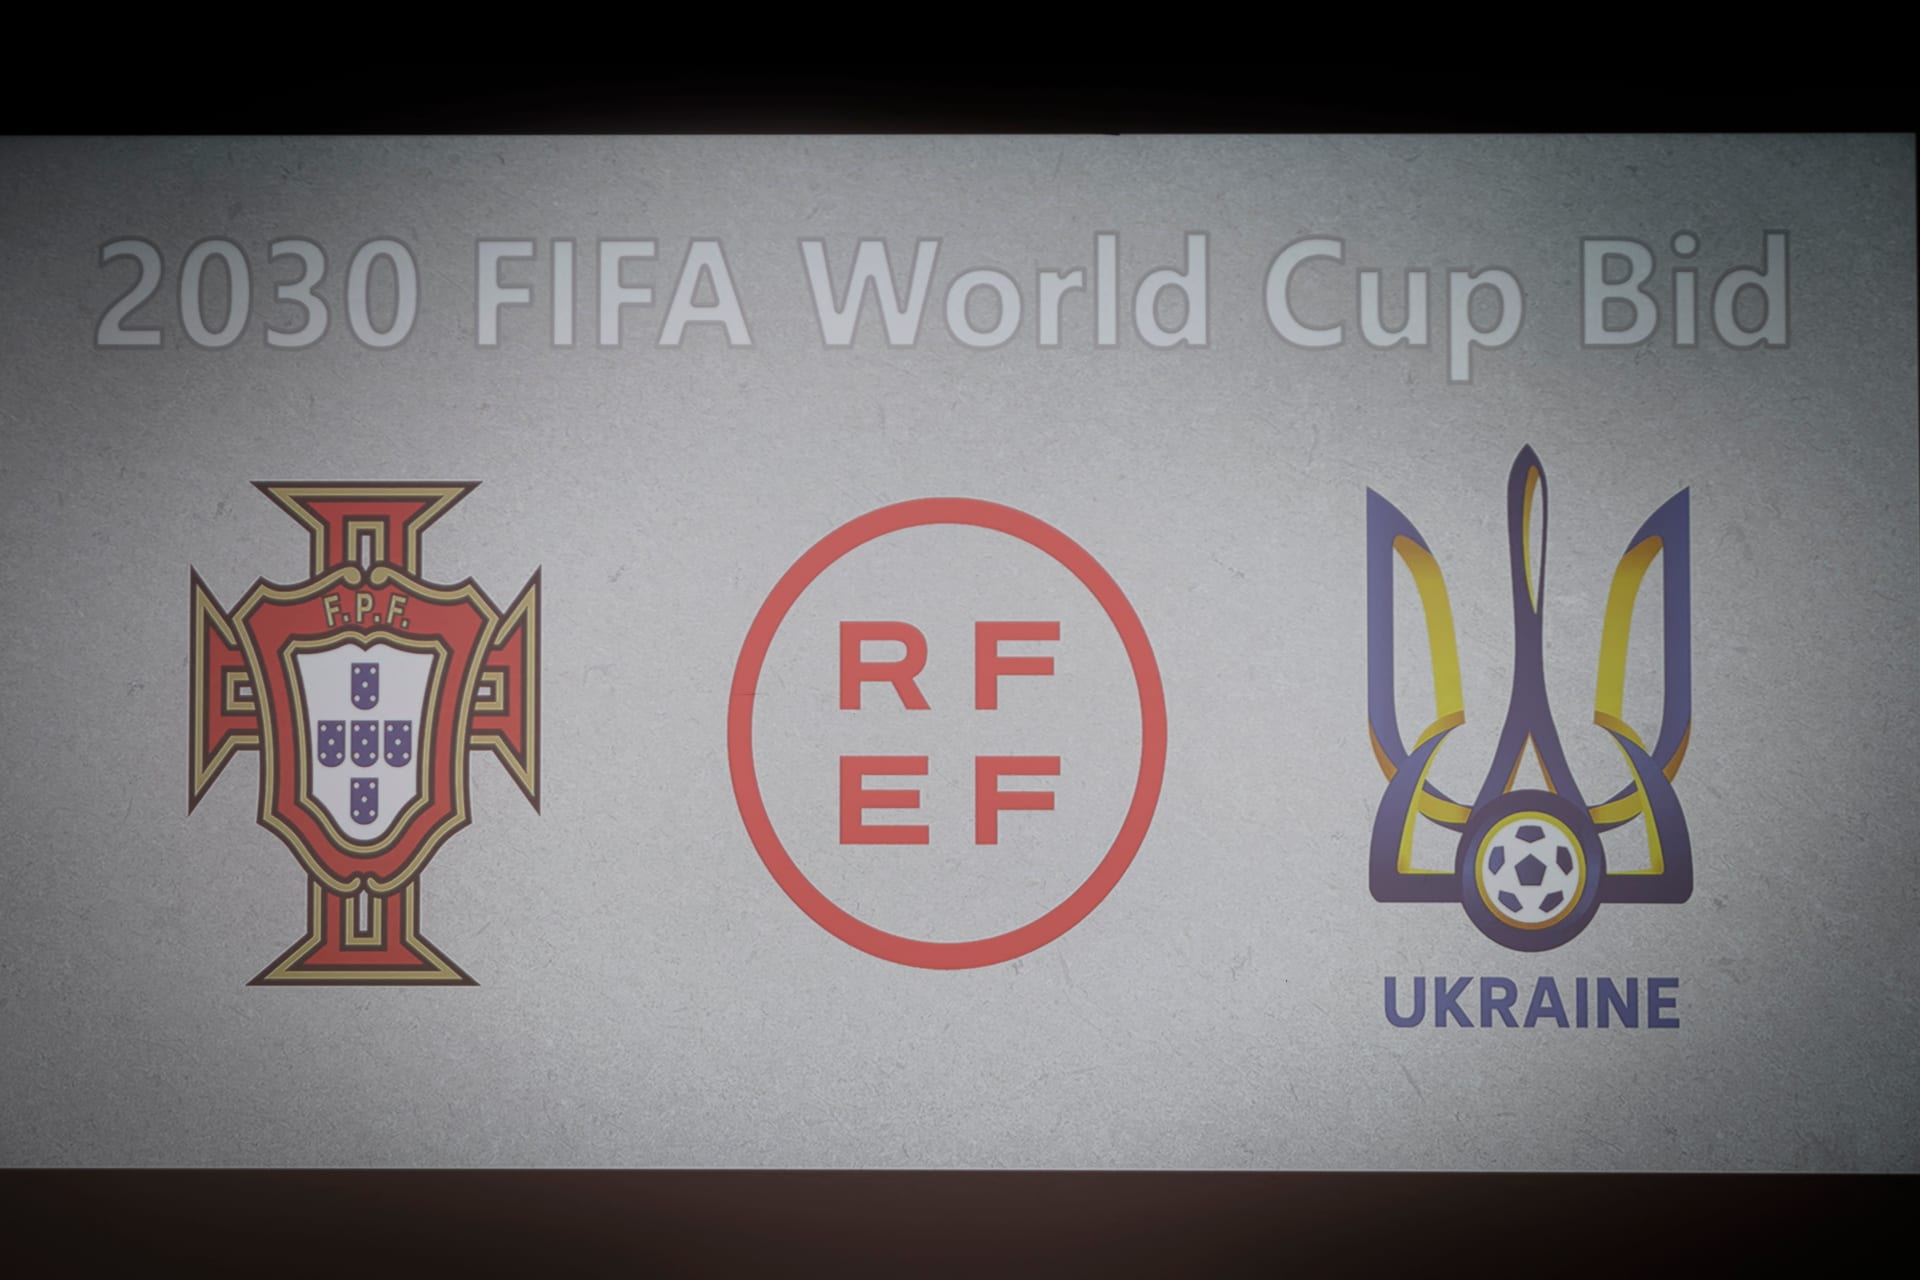 شعارات الاتحاد البرتغالي لكرة القدم (يسار) والاتحاد الإسباني لكرة القدم (وسط) والاتحاد الأوكراني لكرة القدم خلال الإعلان عن عرض  استضافة كأس العالم 2030